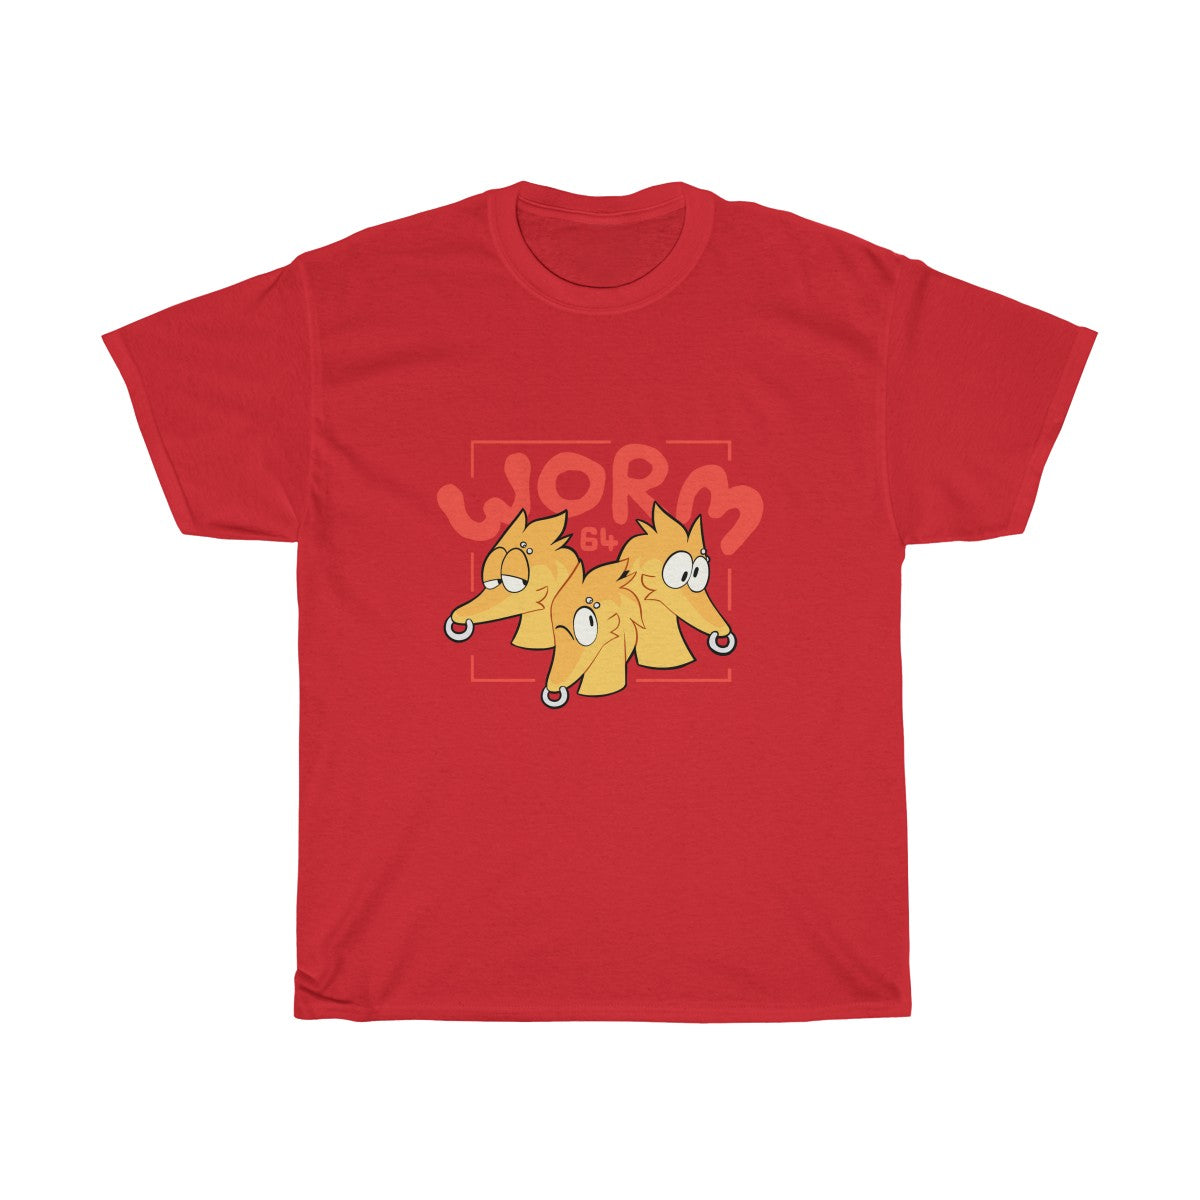 Worm 64 - T-Shirt T-Shirt Motfal Red S 